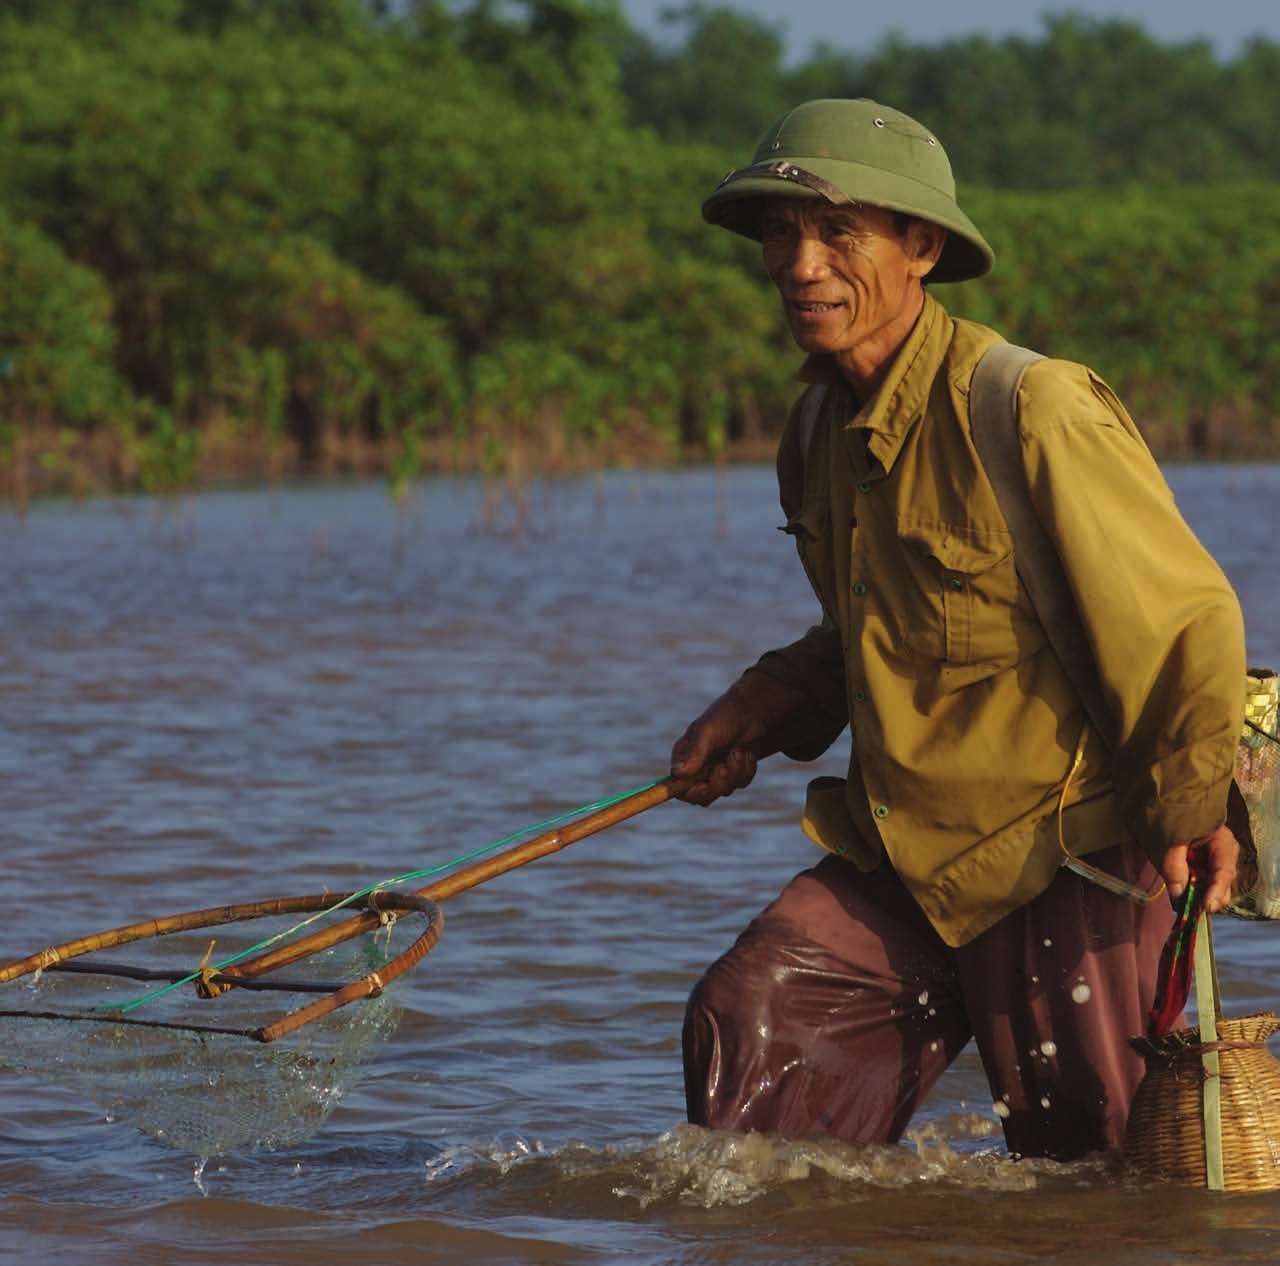 Infraestructura verde en Viet Nam, de Ross Hughes, ganador del concurso fotográfico En primer